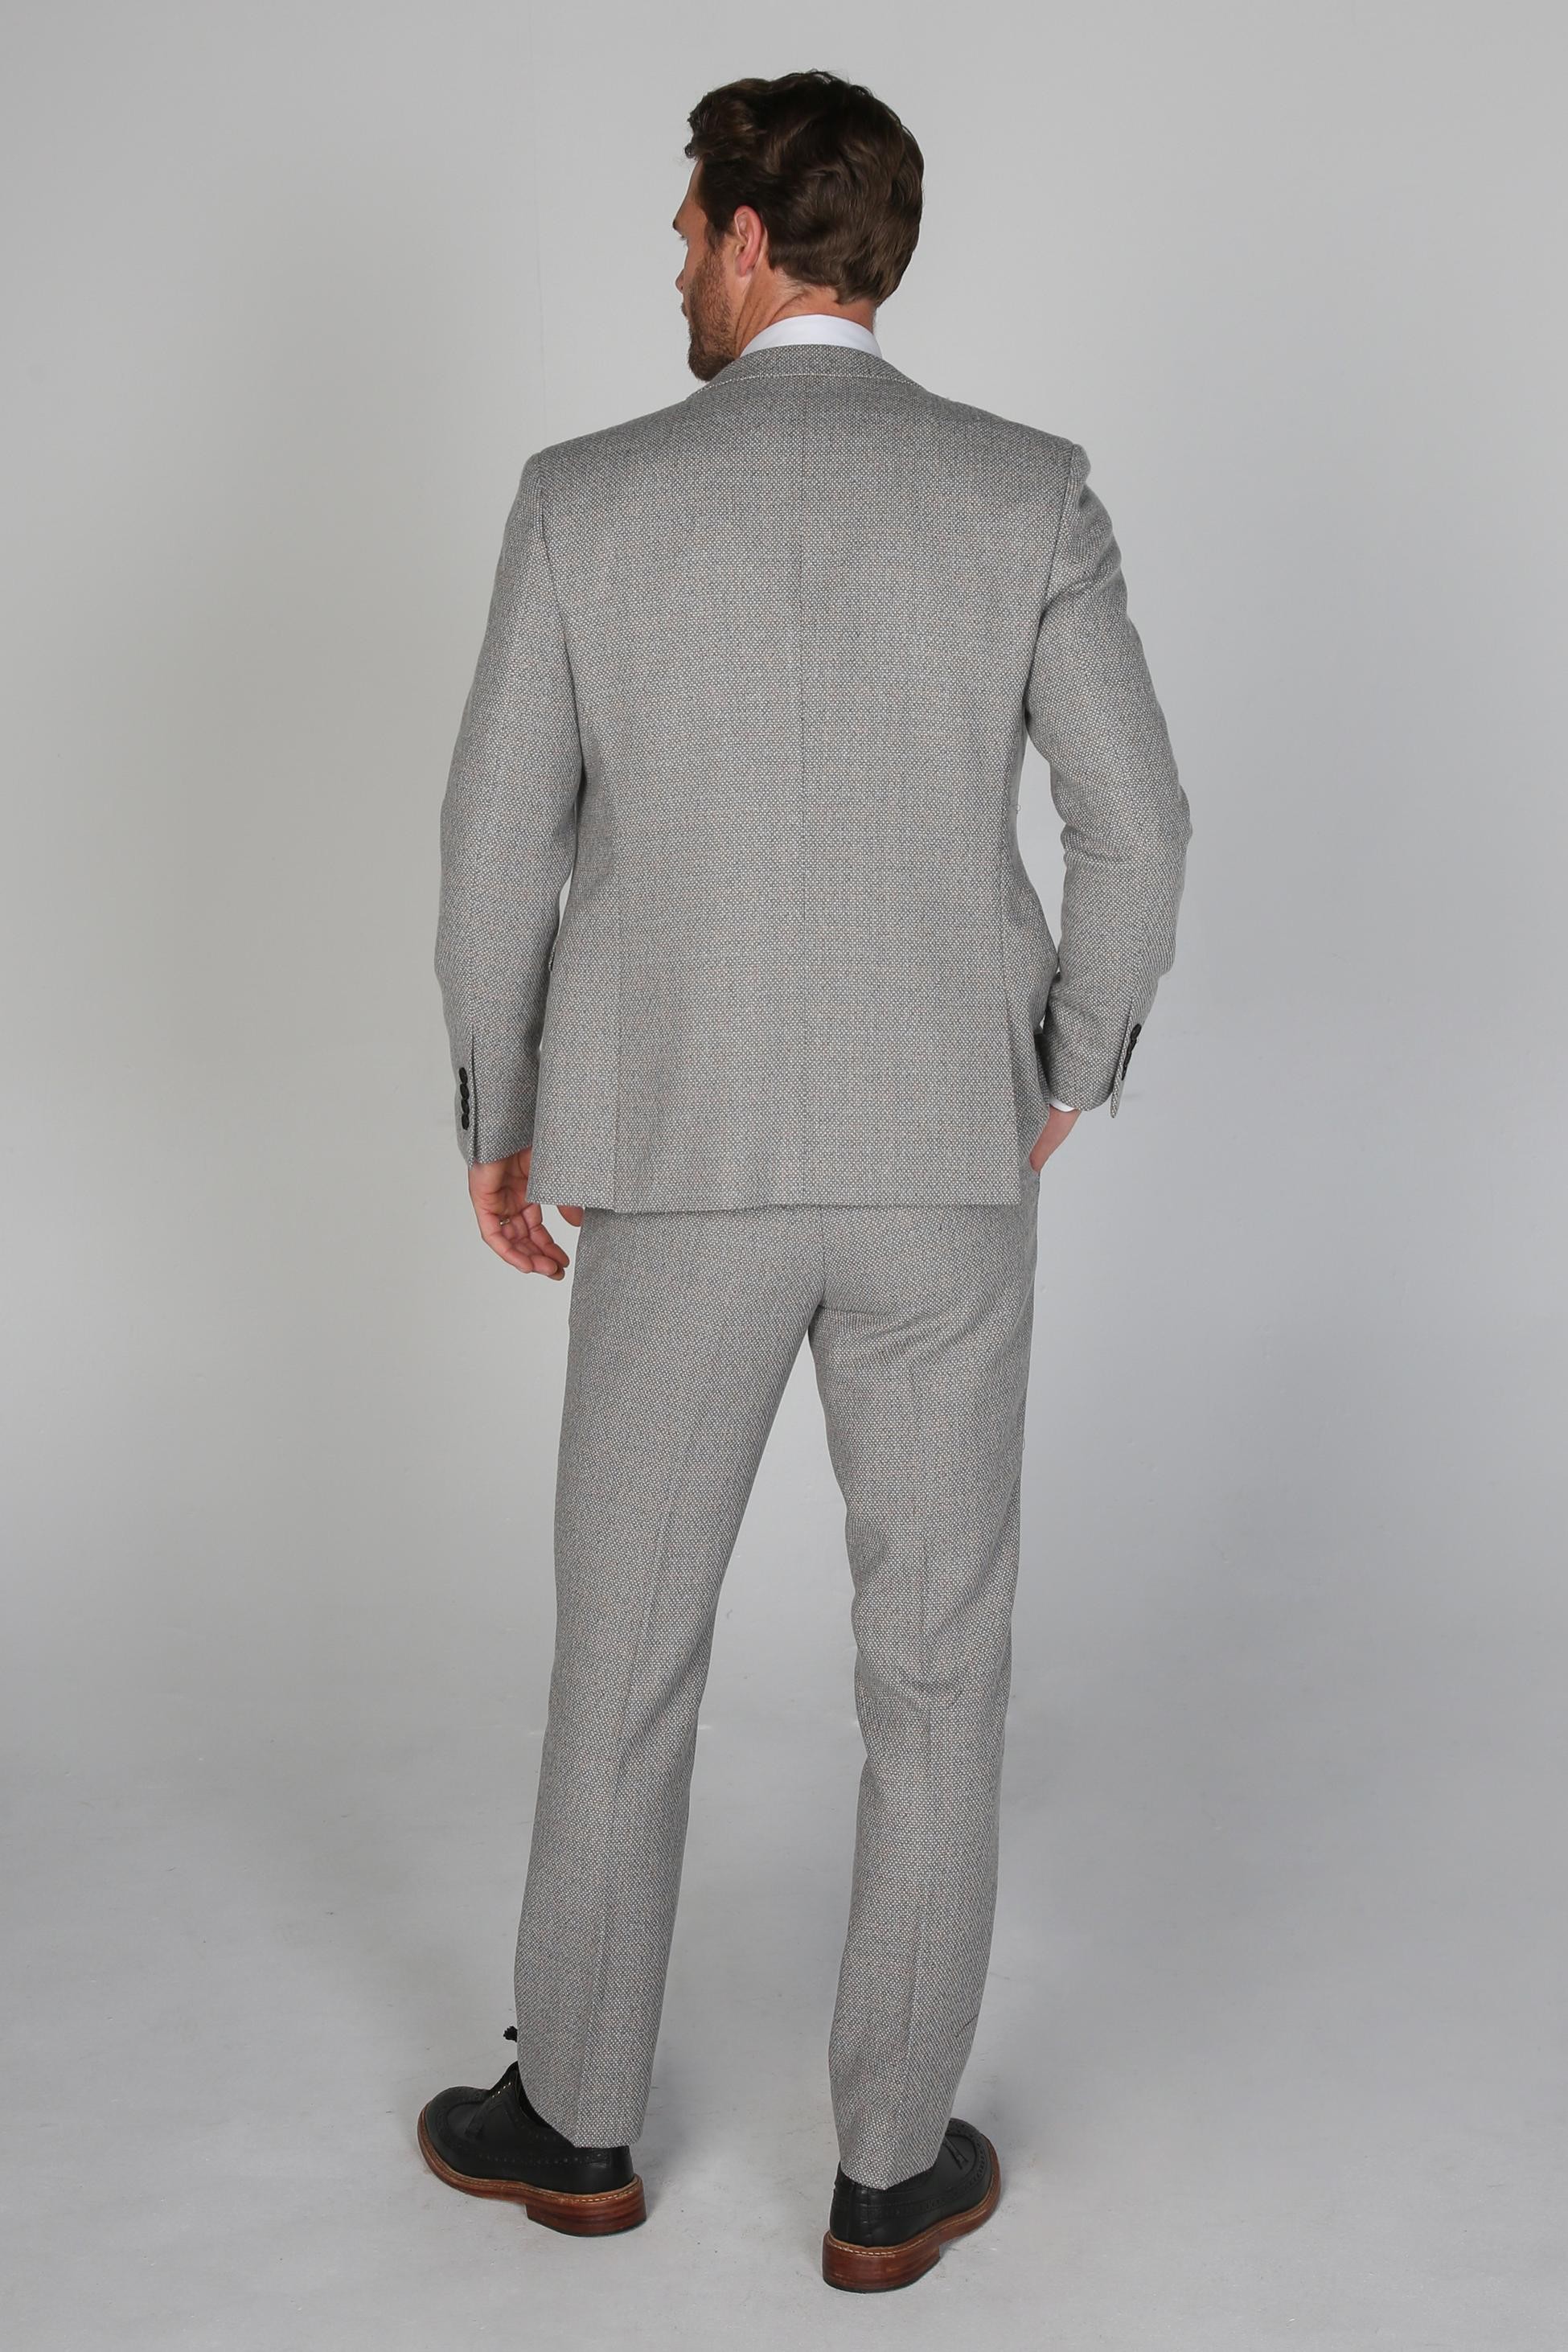 Herren Sakko Im Tweed-Stil Mit Taillierter Passform - Ralph - Creme